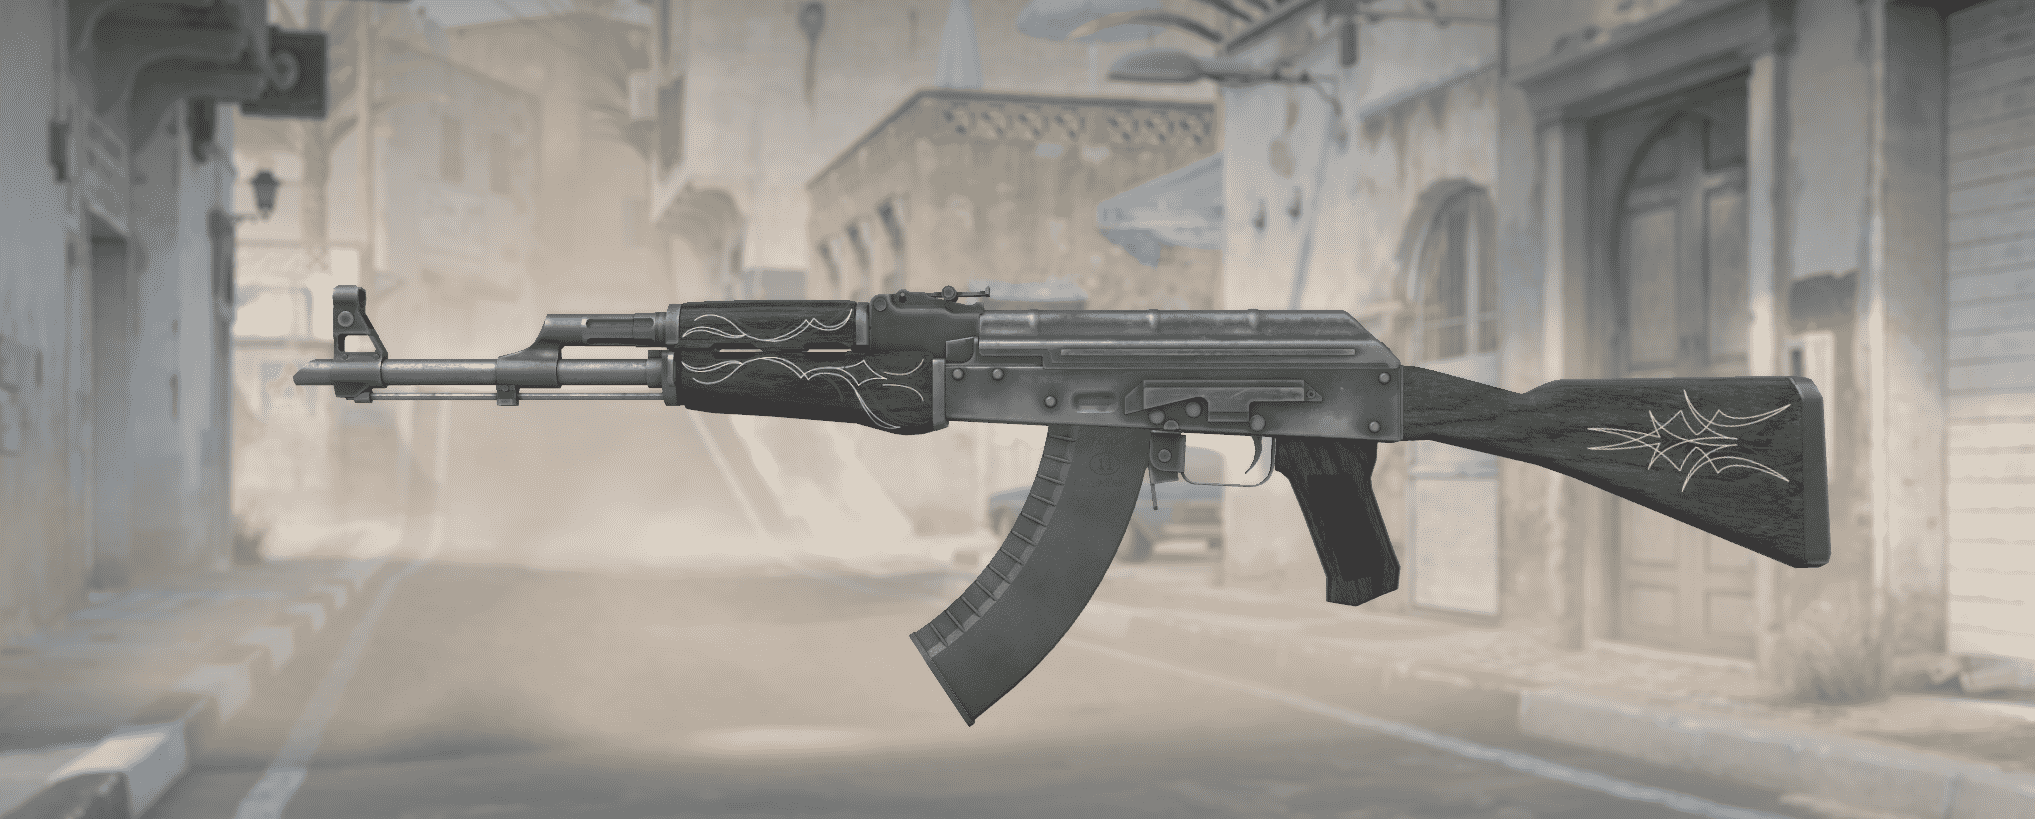 AK-47 szmaragdowy prążek